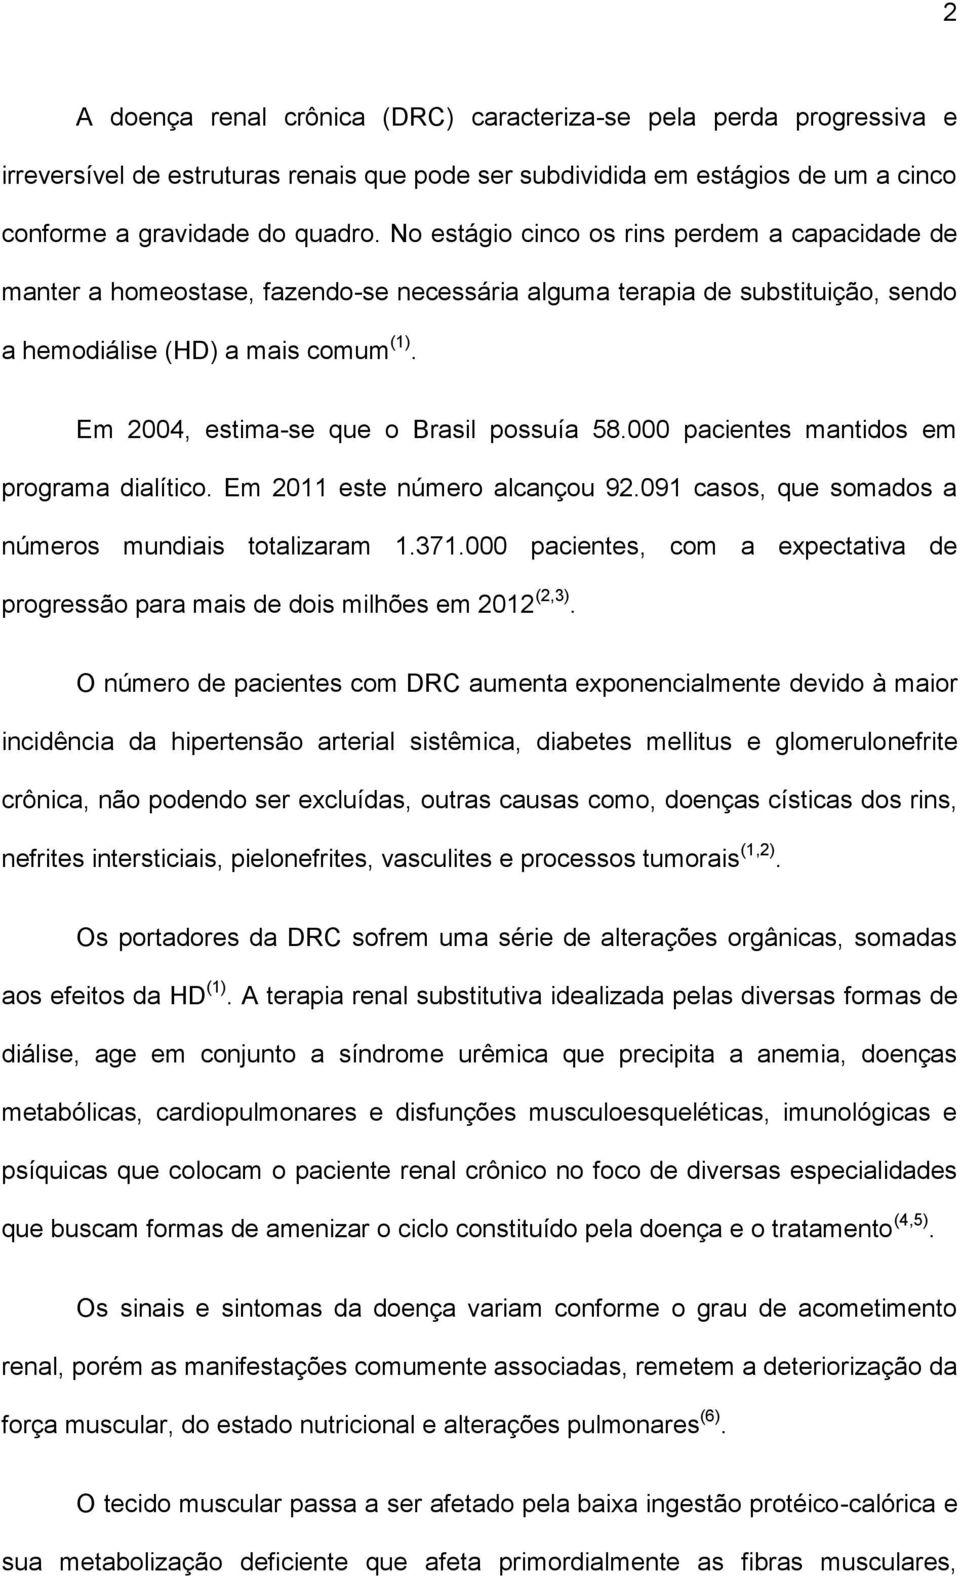 Em 2004, estima-se que o Brasil possuía 58.000 pacientes mantidos em programa dialítico. Em 2011 este número alcançou 92.091 casos, que somados a números mundiais totalizaram 1.371.